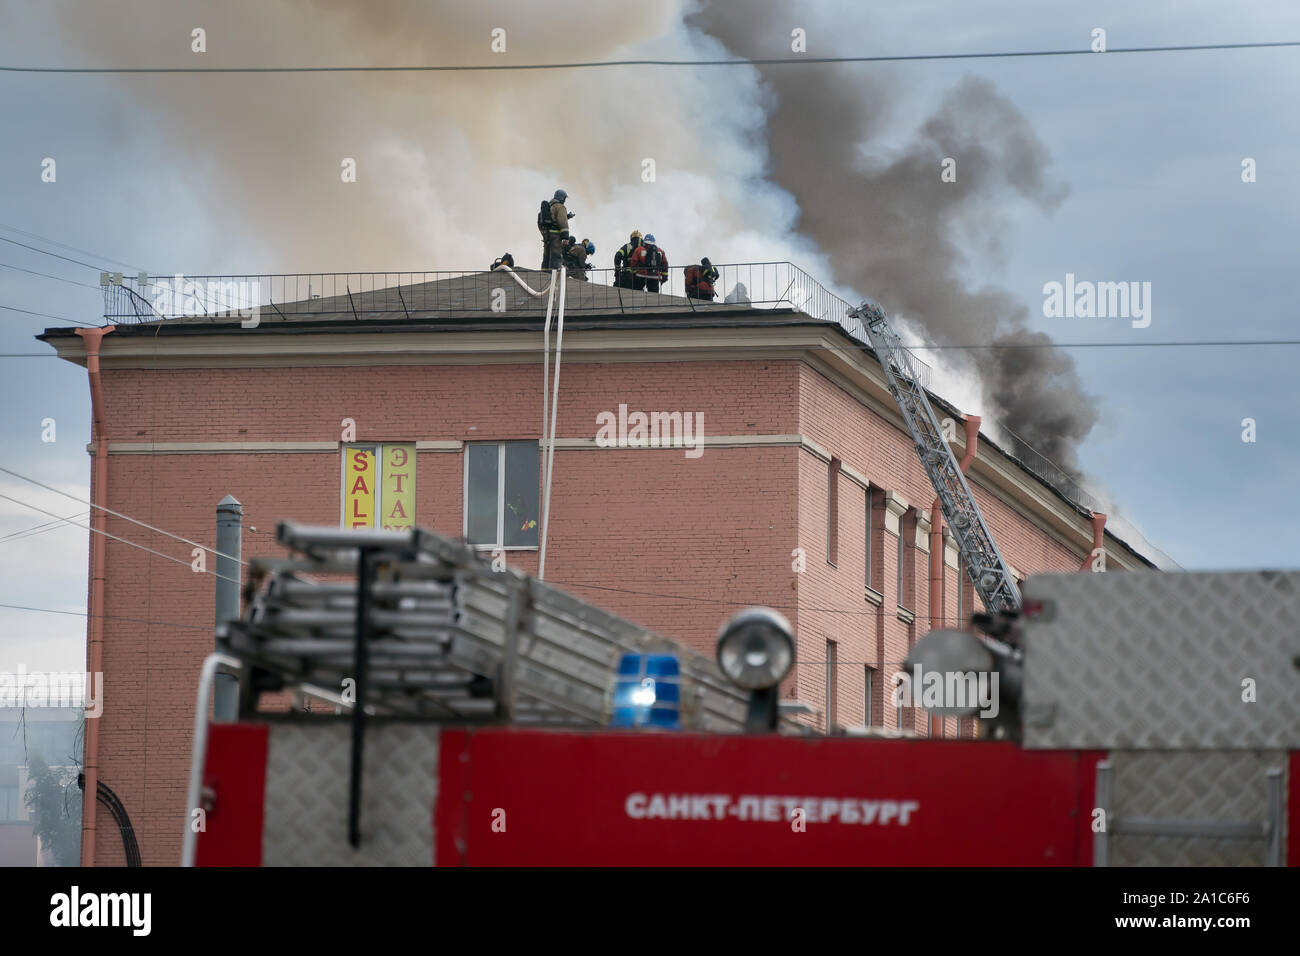 Saint-pétersbourg, Russie - le 14 août 2019 - Incendie dans le centre de bureau 'Leningrad', les pompiers et les services d'urgence sur les lieux Banque D'Images